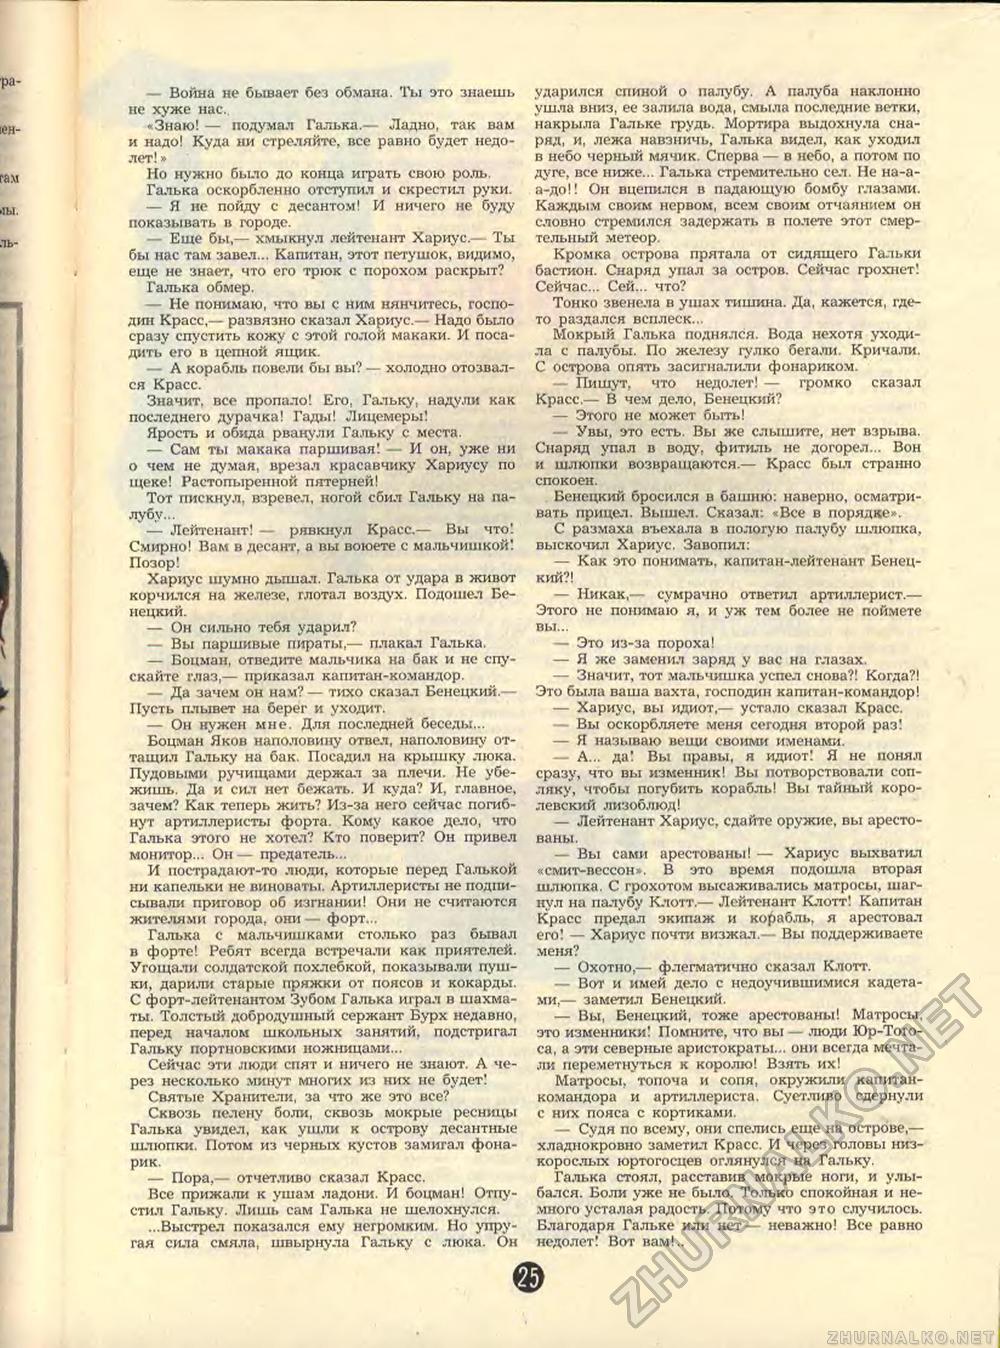 Пионер 1988-12, страница 27